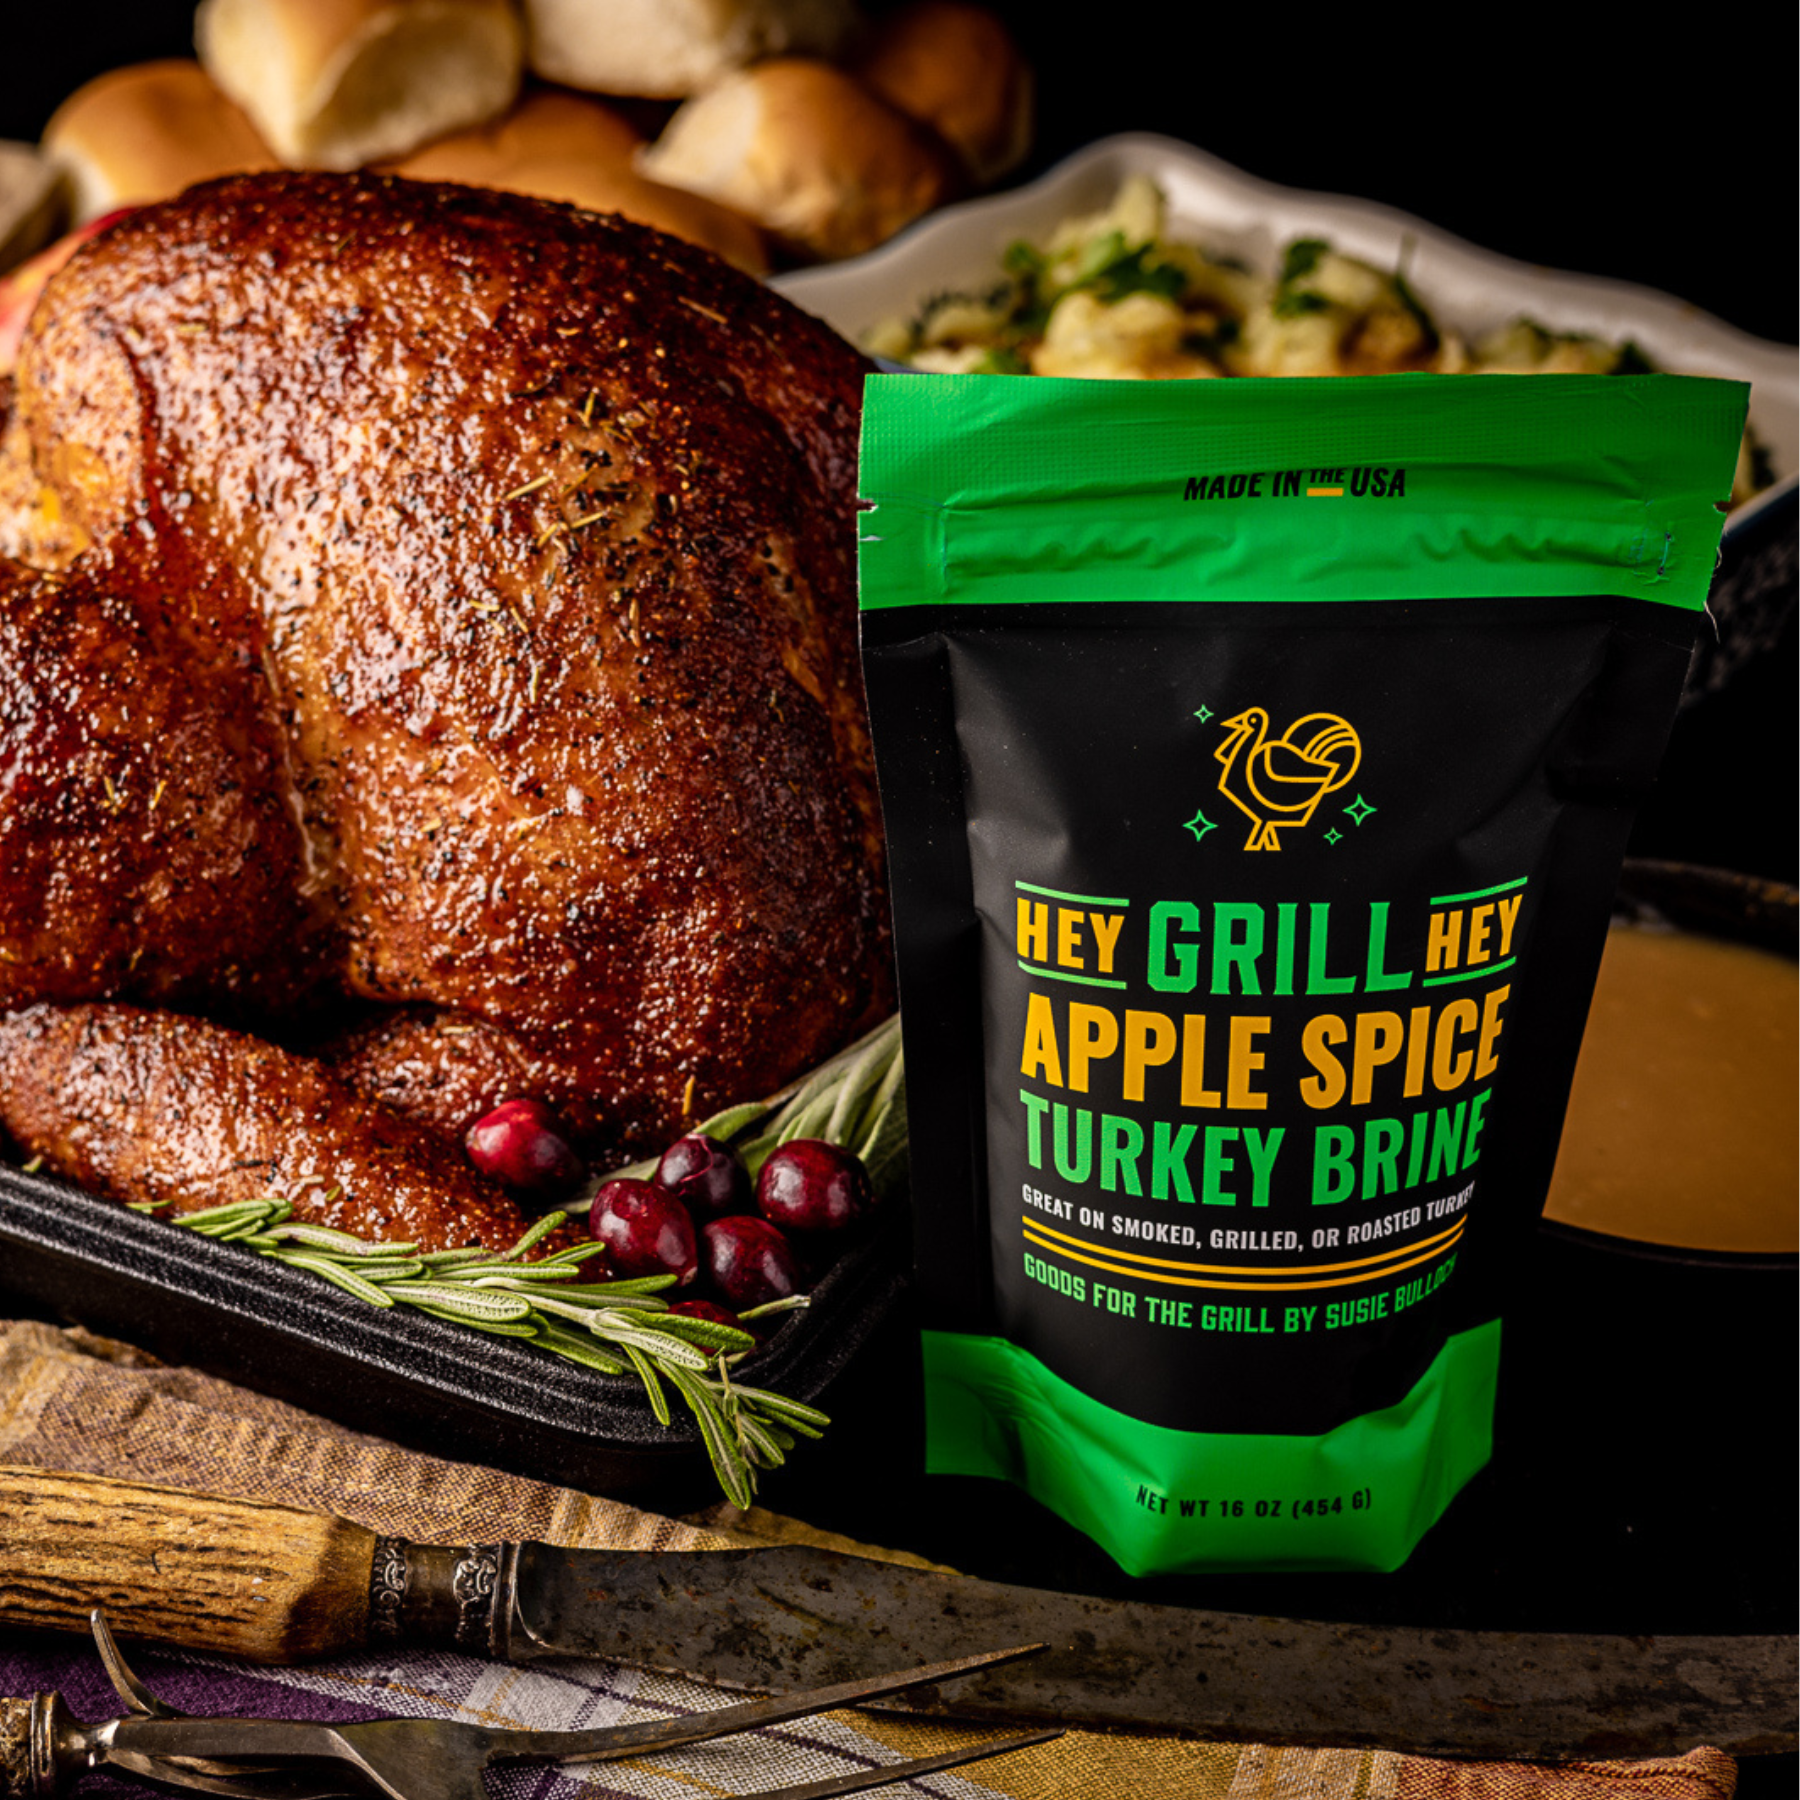 Apple Spice Smoked Turkey Brine - Hey Grill, Hey